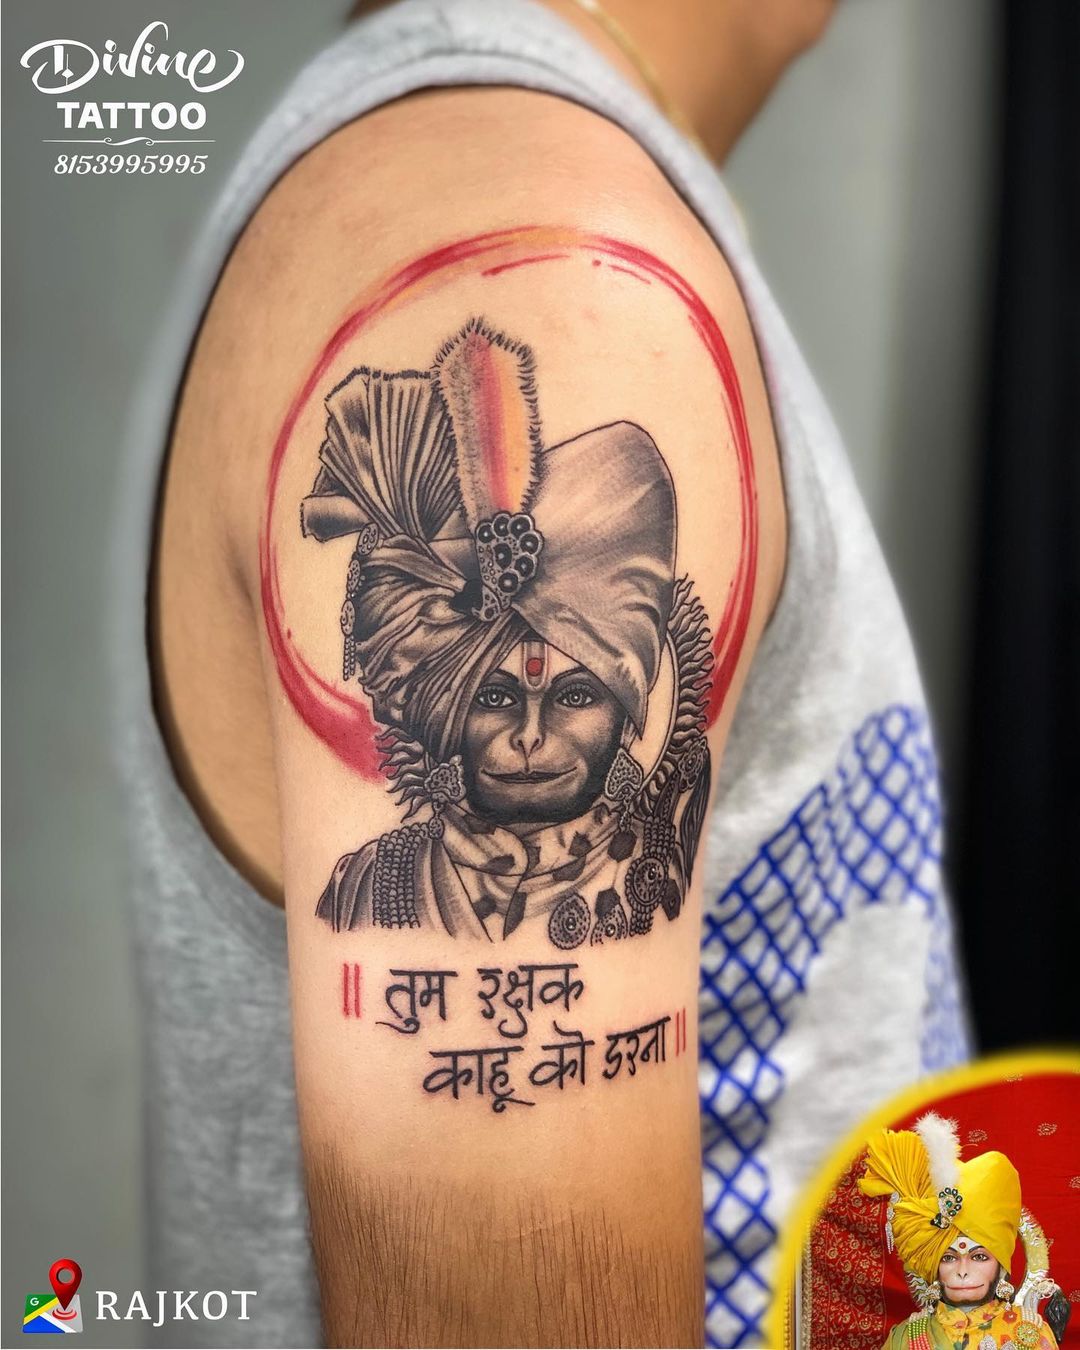 Lord Hanuman Tattoo  Portrait Tattoo Design  Lord Hanuman Tattoo   Portrait Tattoo Design  Subscribe to my YouTube Channel    Ansh Ink  Tattoos  fingertattoosformen fingertattoos  By Ansh Ink Tattoos   Facebook